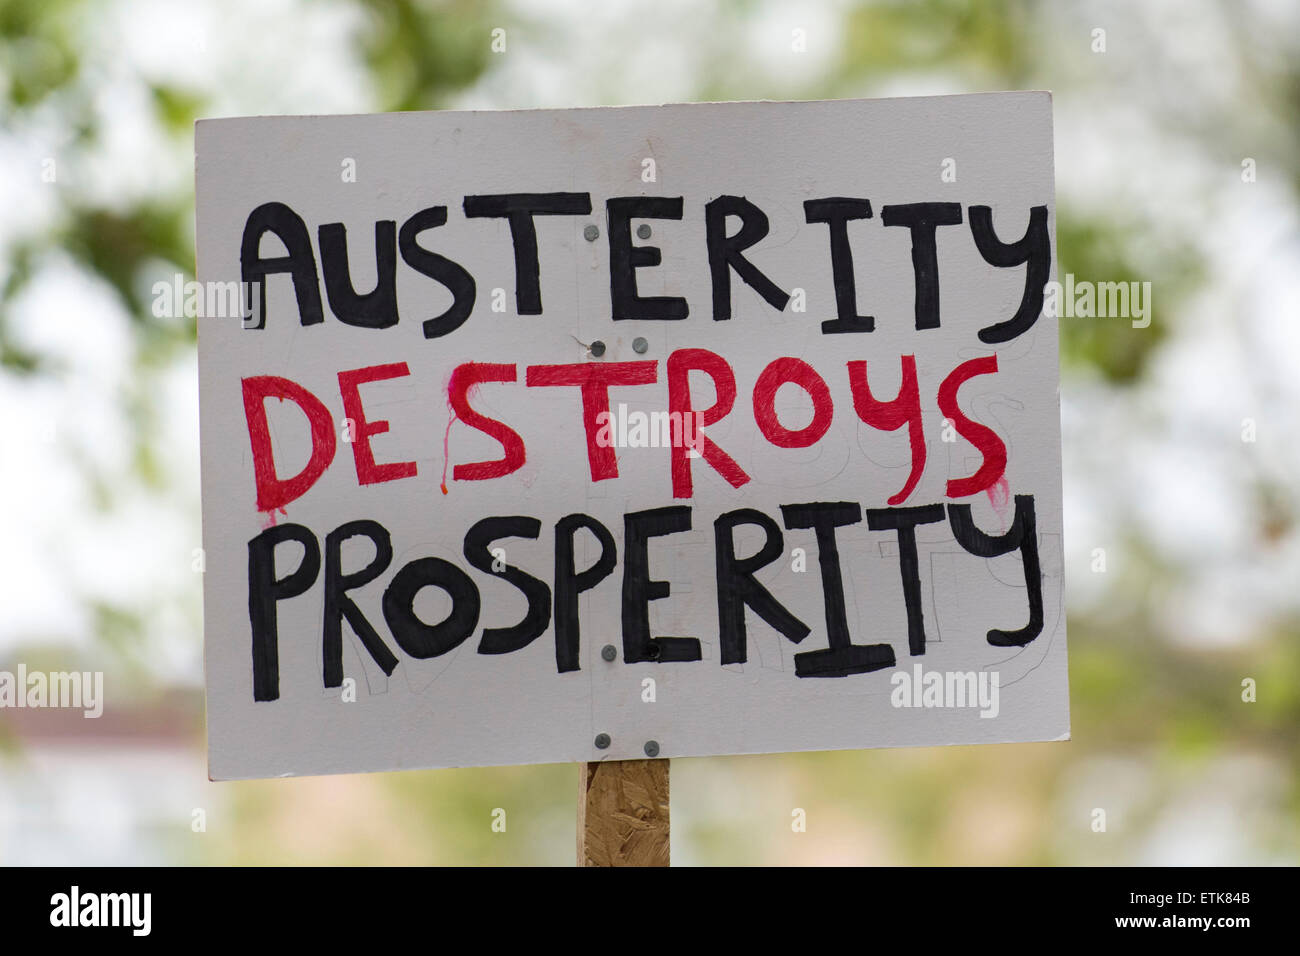 Un anti-signo de austeridad que lee "austeridad destruye la prosperidad" visto en una protesta contra el Partido Conservador. Foto de stock